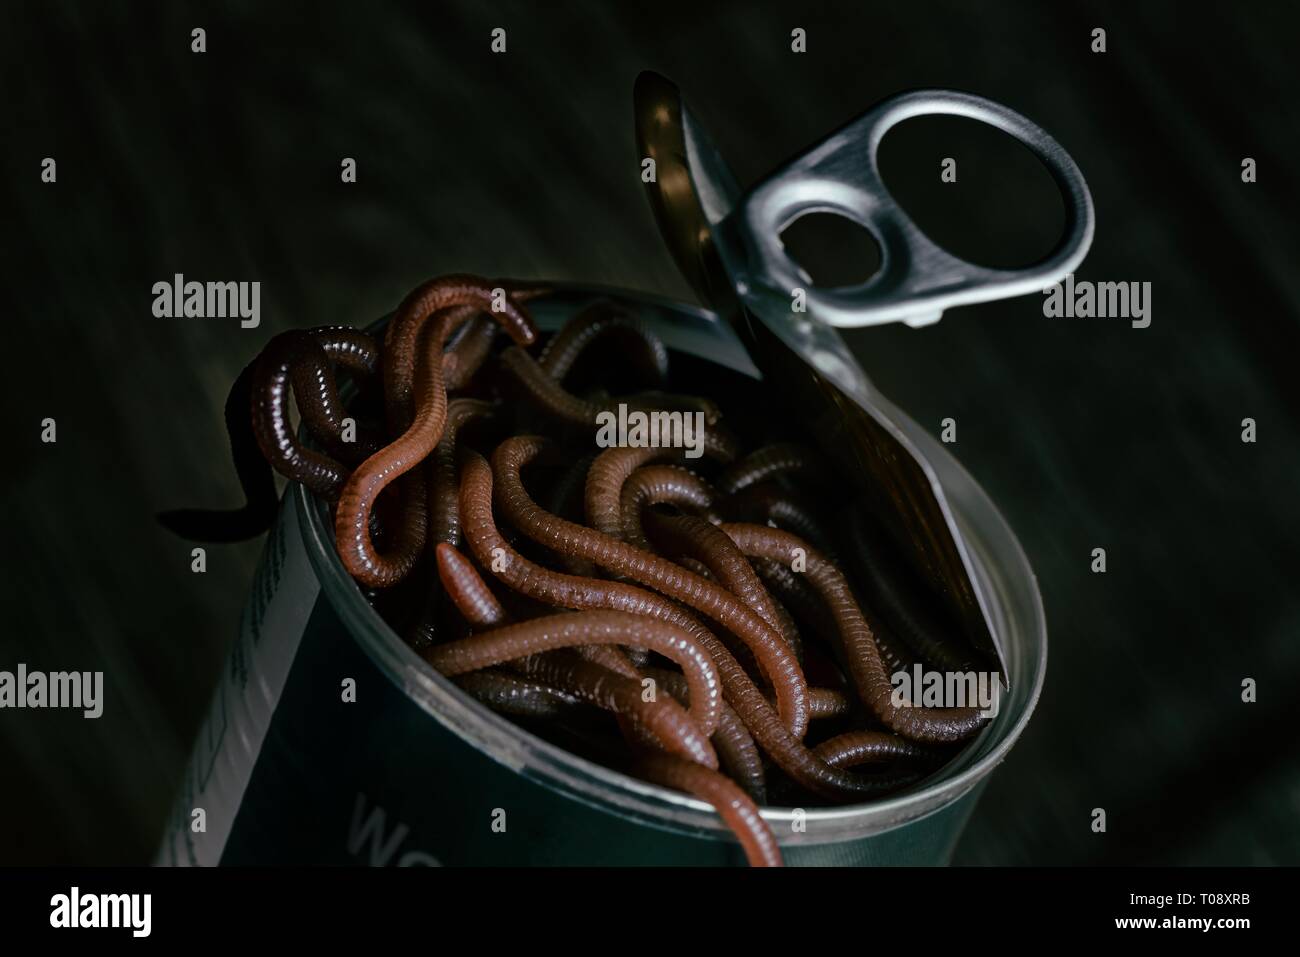 Dunkel, Moody studio shot Darstellung einer frisch geöffneten Dose Würmer. In einer dunklen Wurm ist bereits verlassen können. Stockfoto